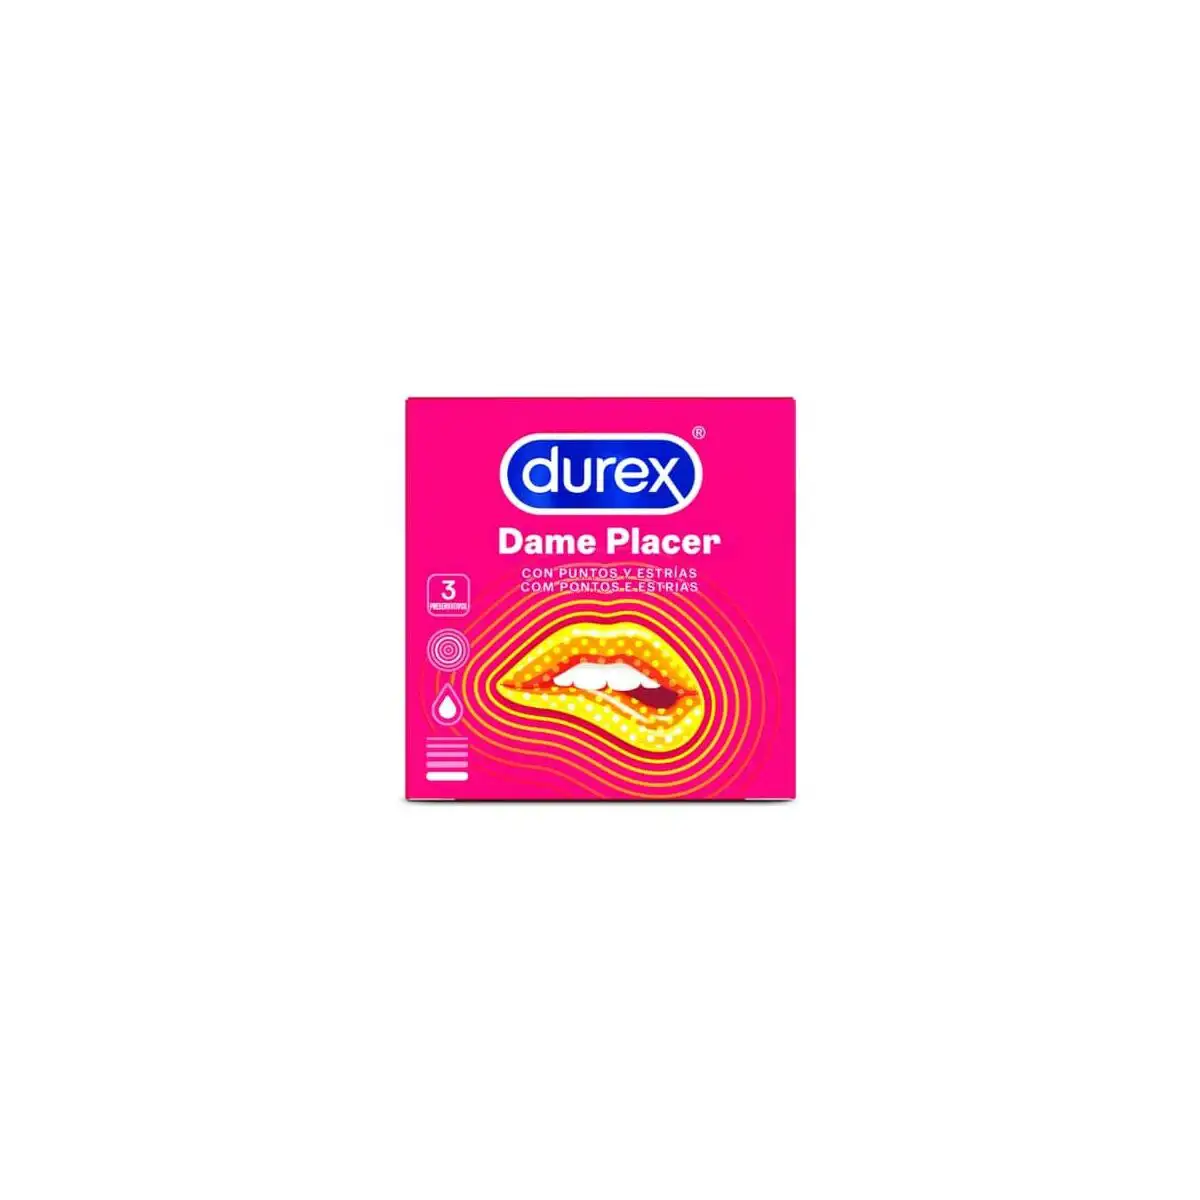 Preservatifs dame placer durex 3 uds_5719. Entrez dans DIAYTAR SENEGAL - Où Chaque Détail Compte. Explorez notre boutique en ligne pour trouver des produits de haute qualité, soigneusement choisis pour répondre à vos besoins et vos désirs.